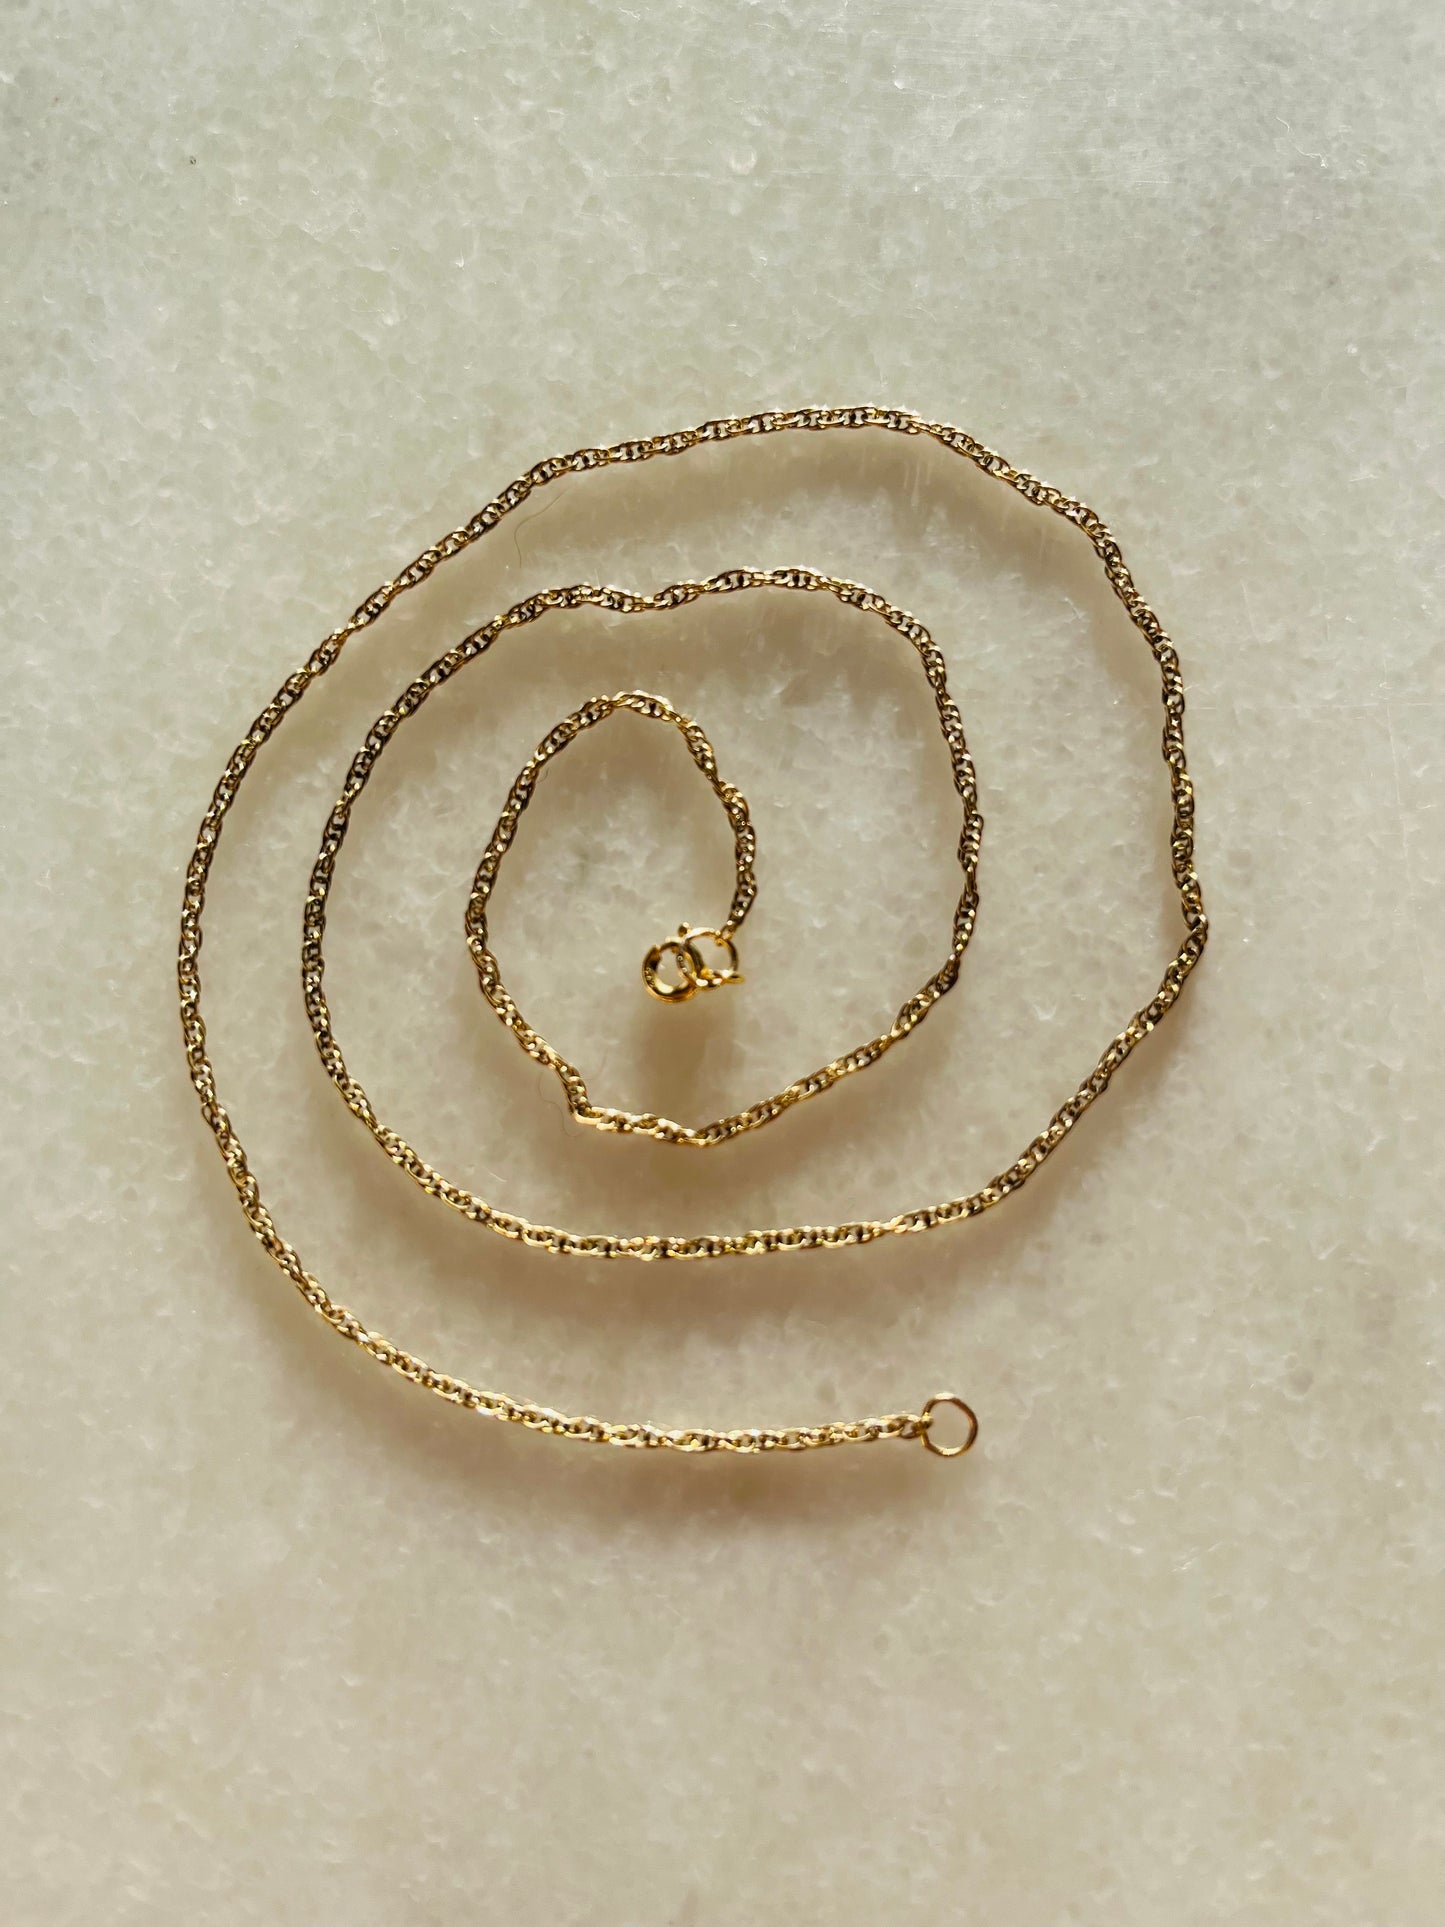 9ct Gold Chain Link Fine Necklace Vintage 50cm Long